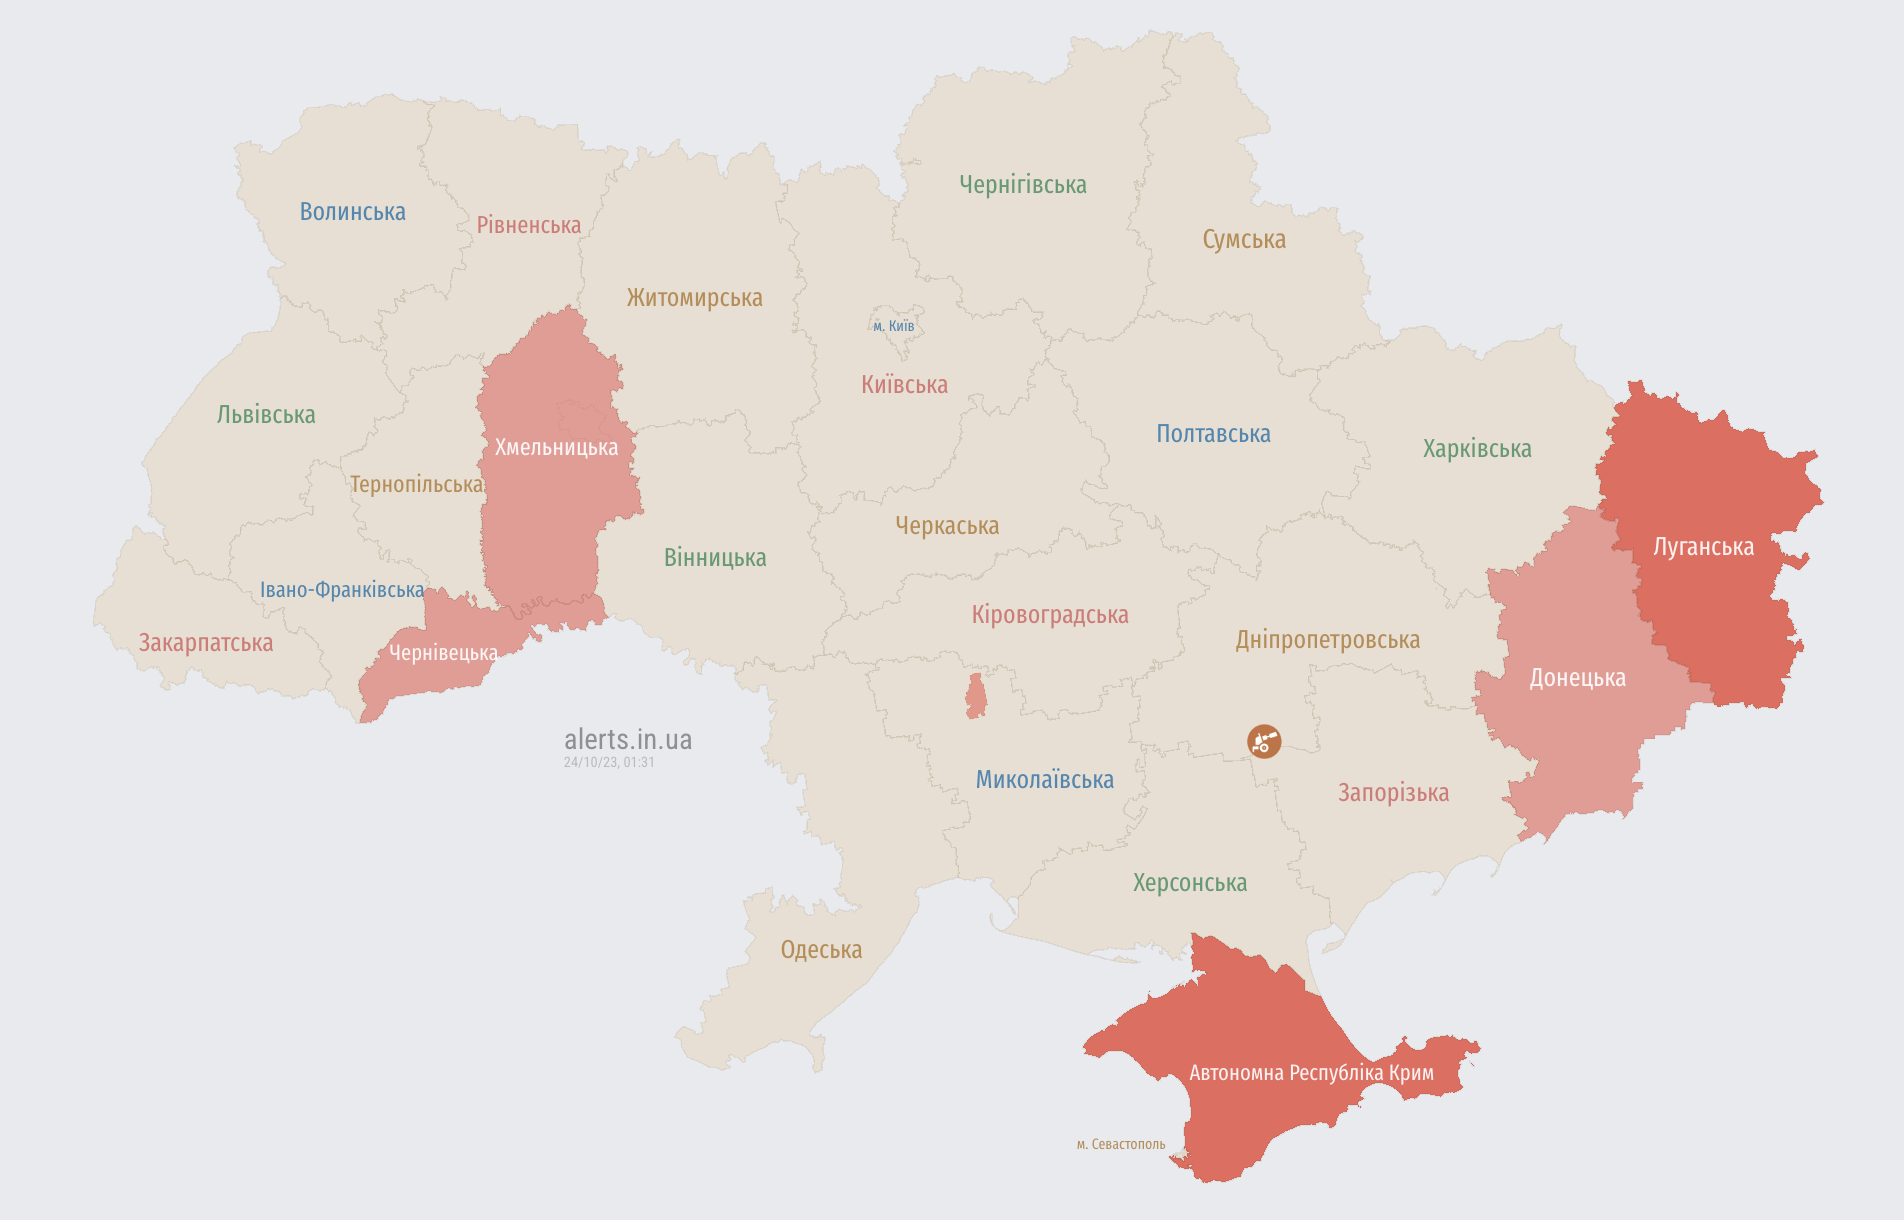 Повітряна тривога у низці областей України: де є загроза ударних БПЛА